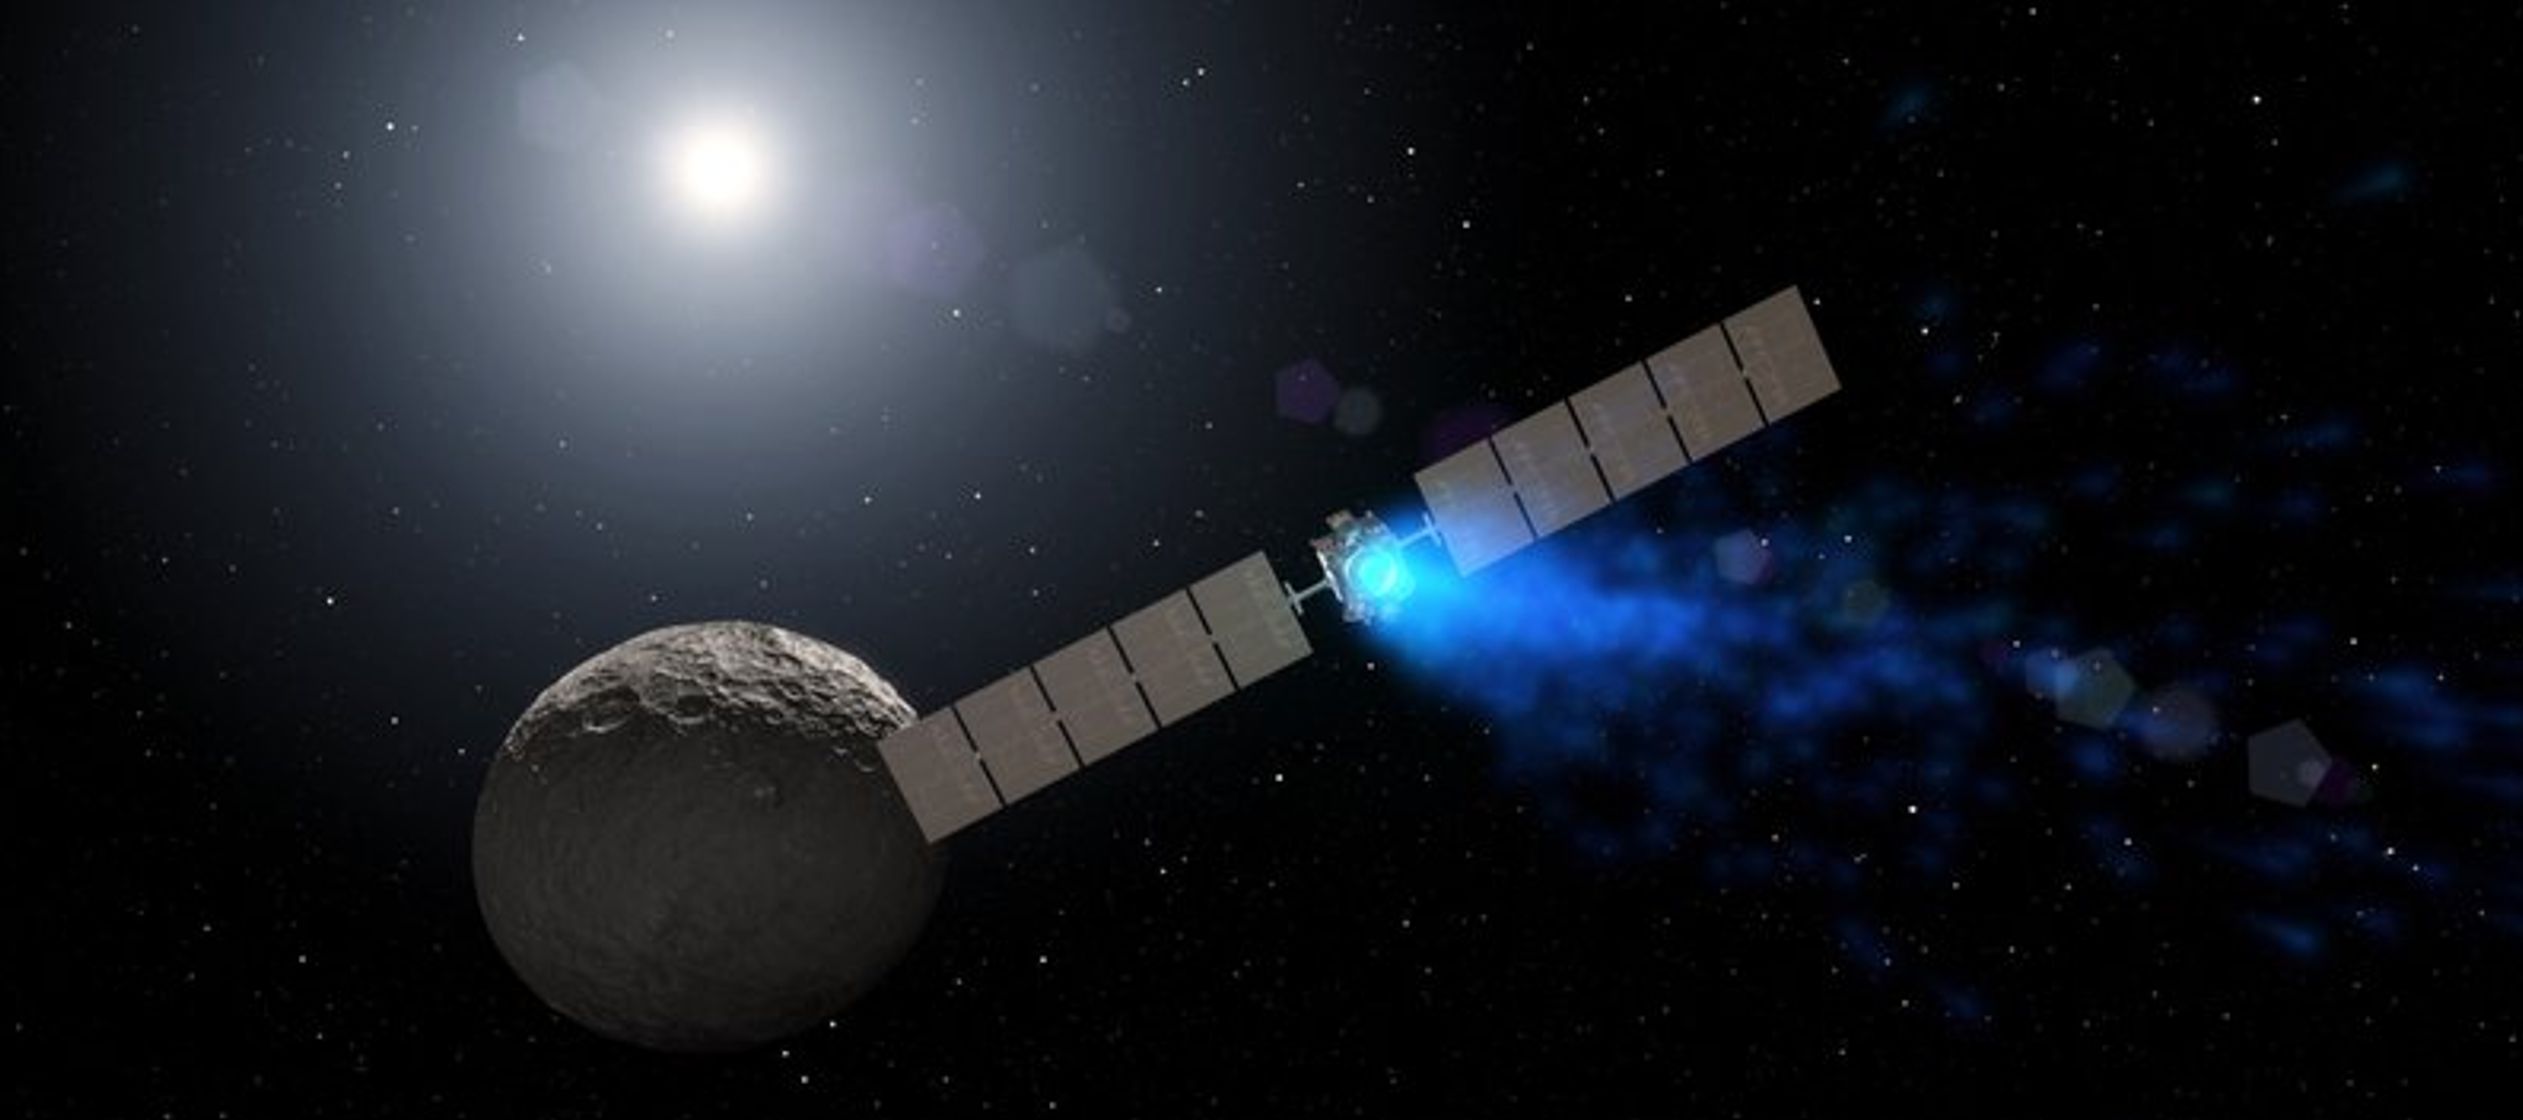 Tras orbitar el asteroide Vesta, Dawn comenzó a orbitar el planeta enano Ceres. NASA dice...